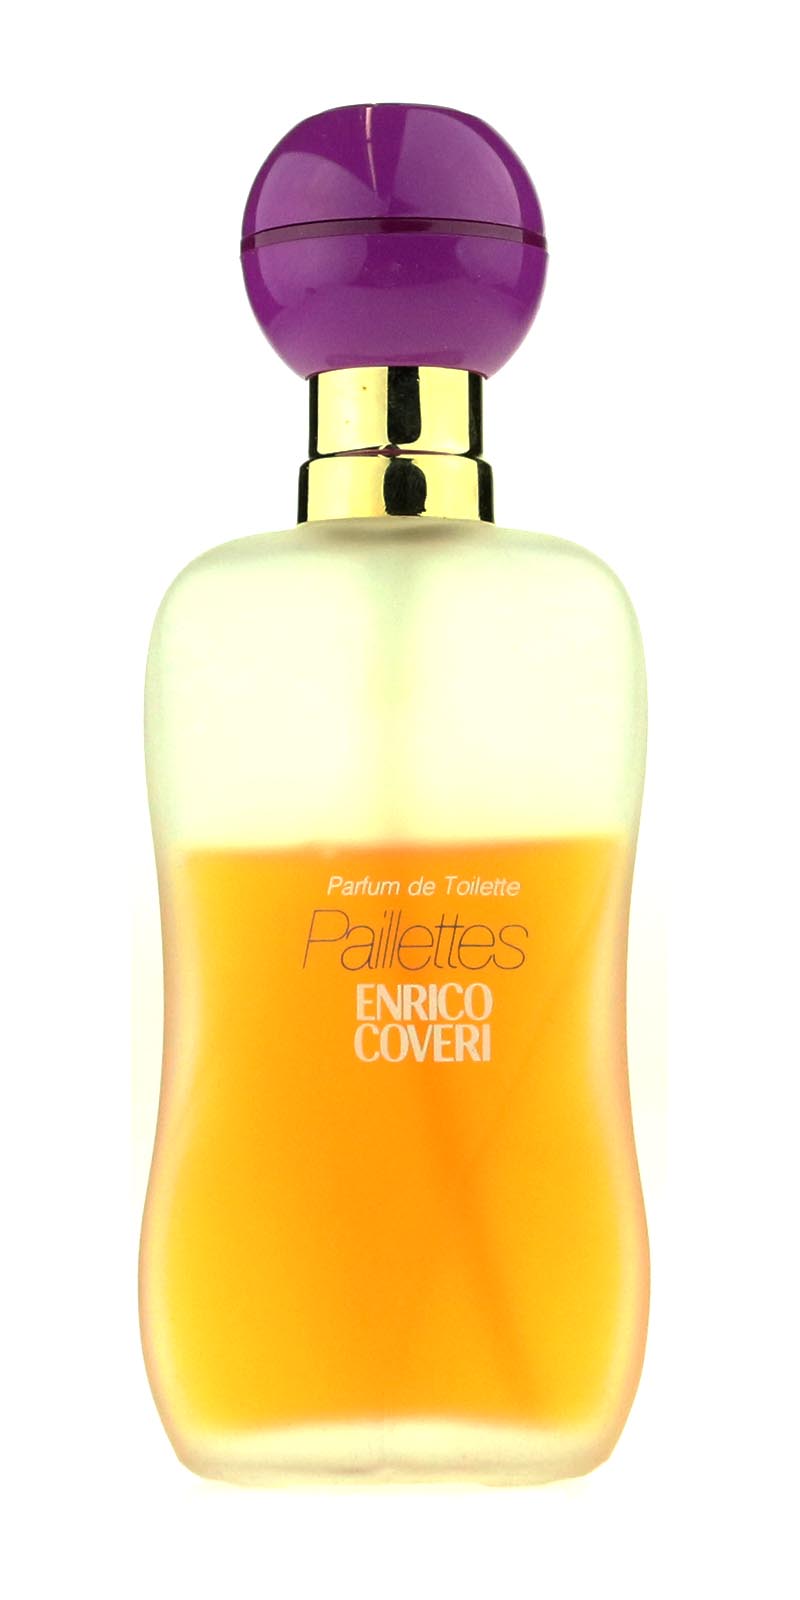 Enrico Coveri Paillettes Parfum De Toilette Spray 40ml/1.40Oz Low Fill